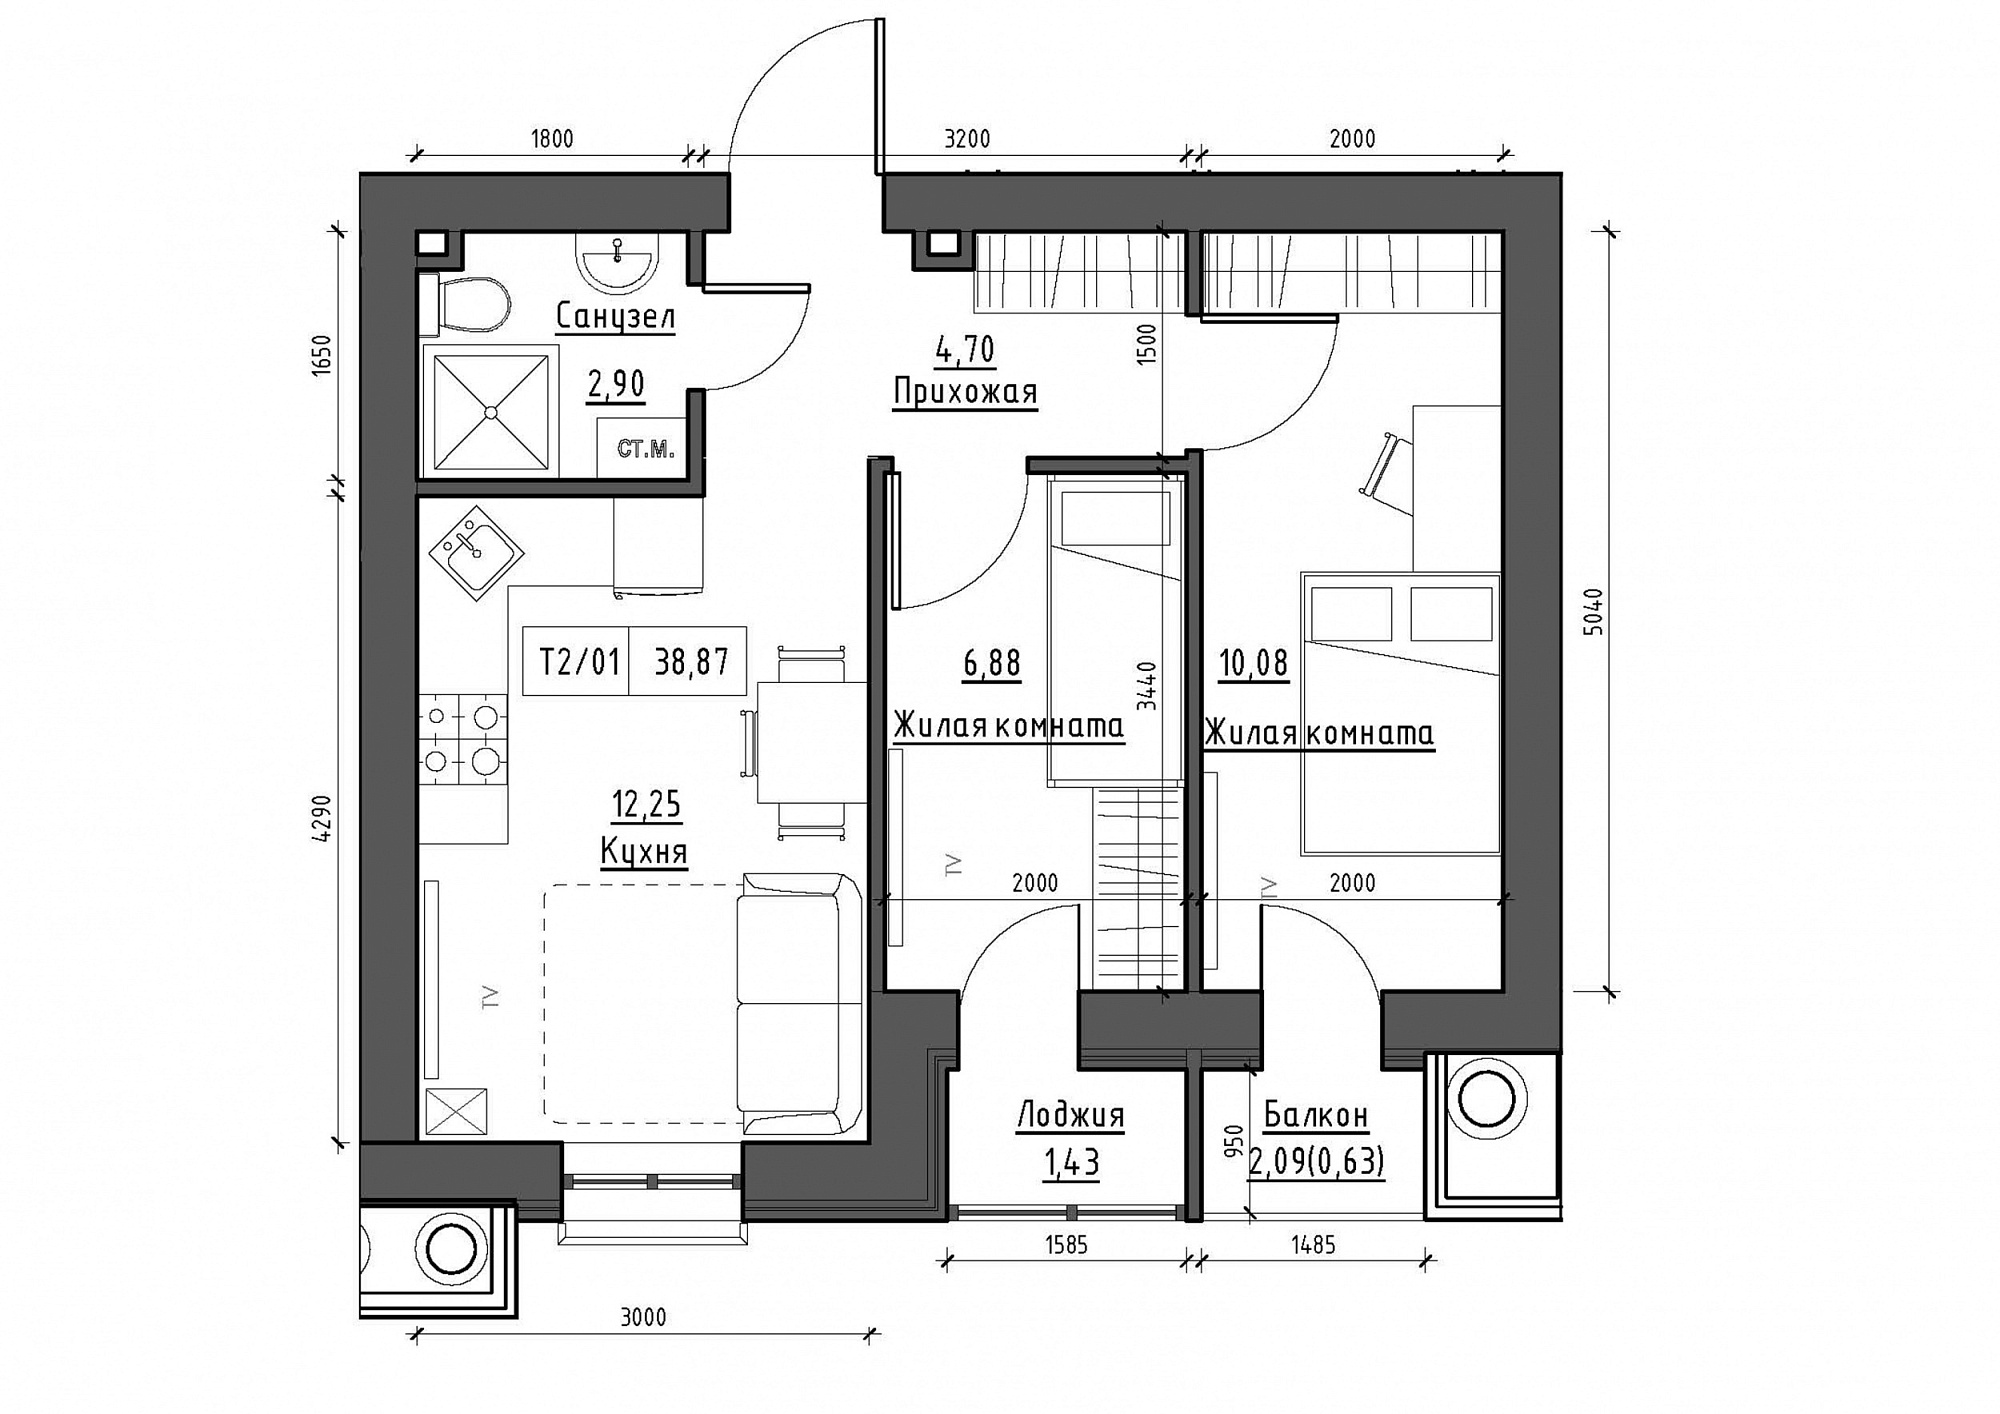 Планировка 2-к квартира площей 38.87м2, KS-012-02/0005.